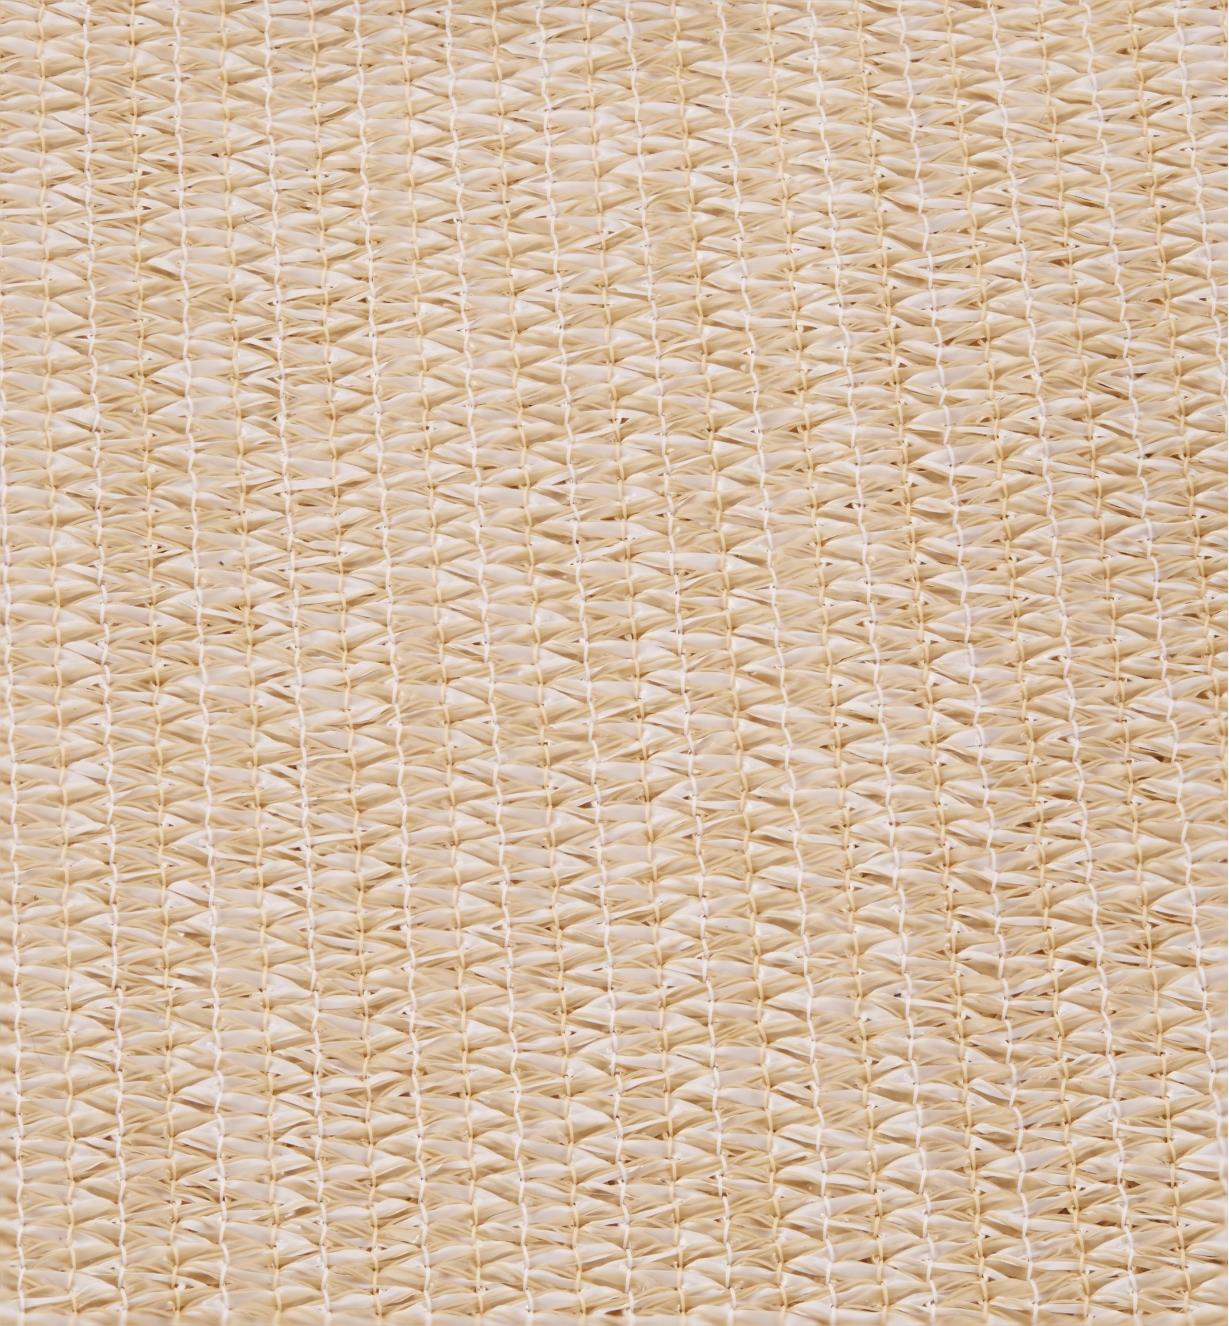 Close-up of shade sail fabric